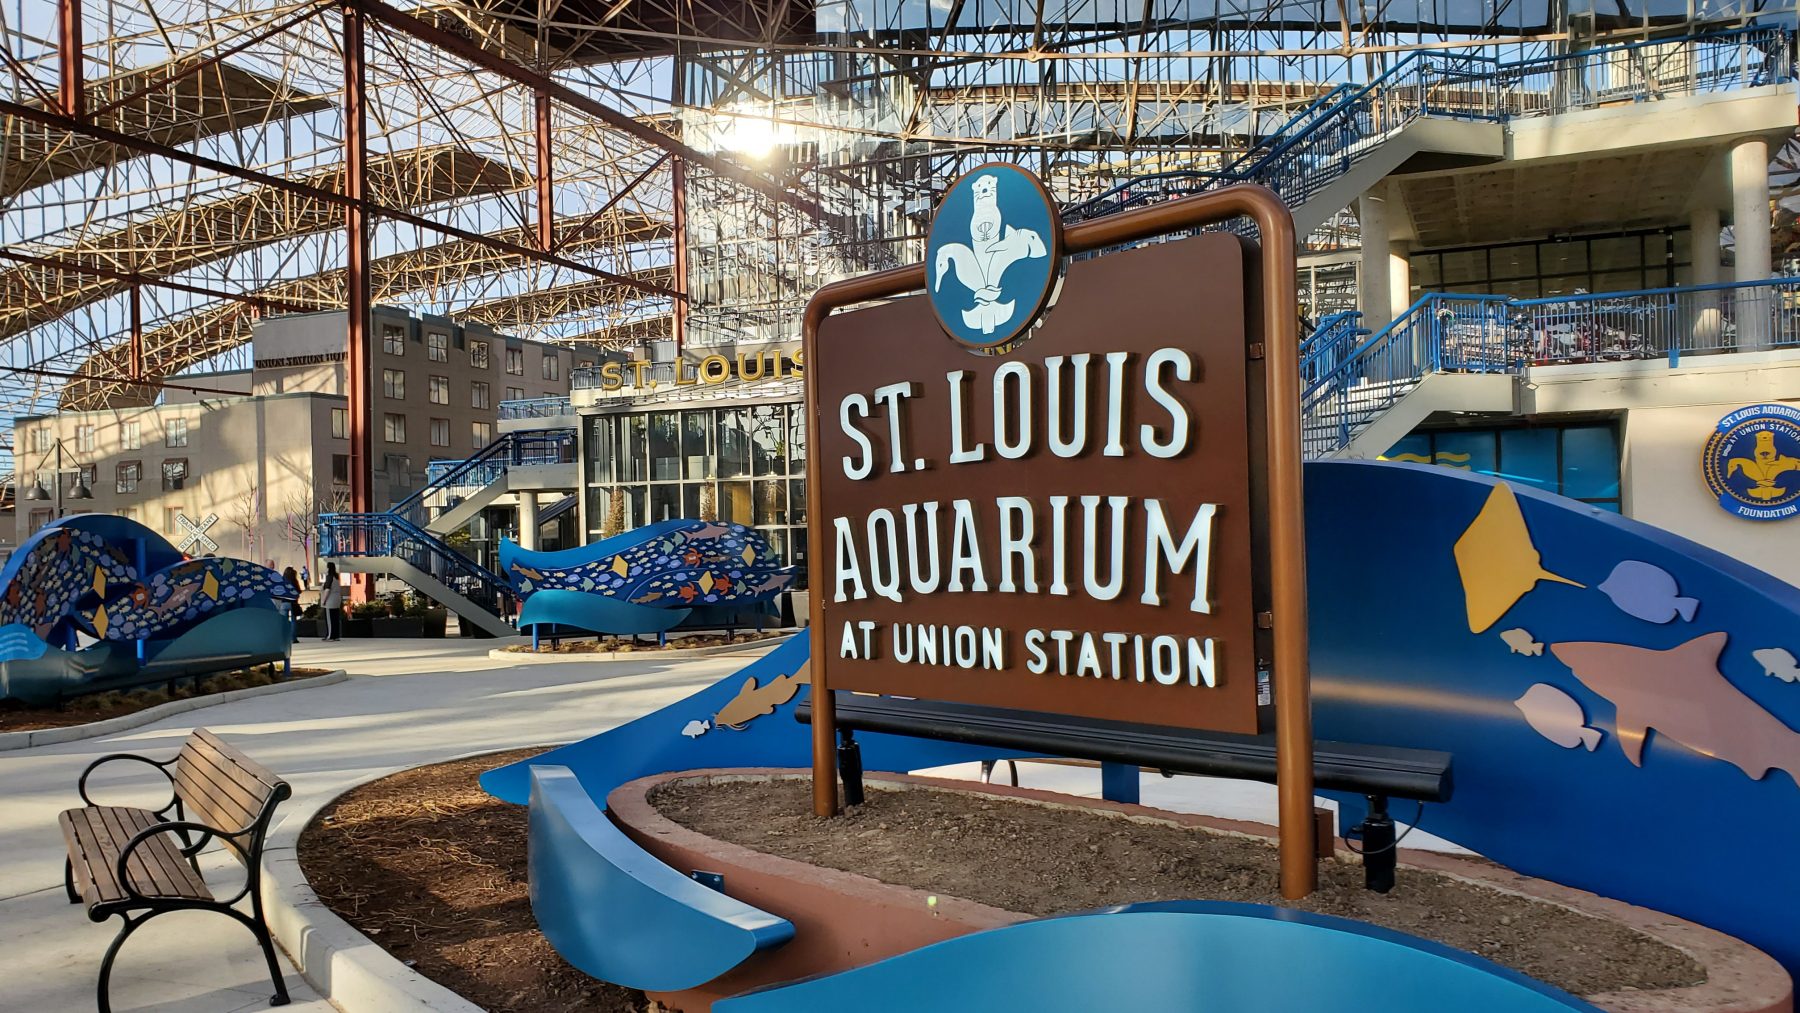 St. Louis Aquarium – Nassal